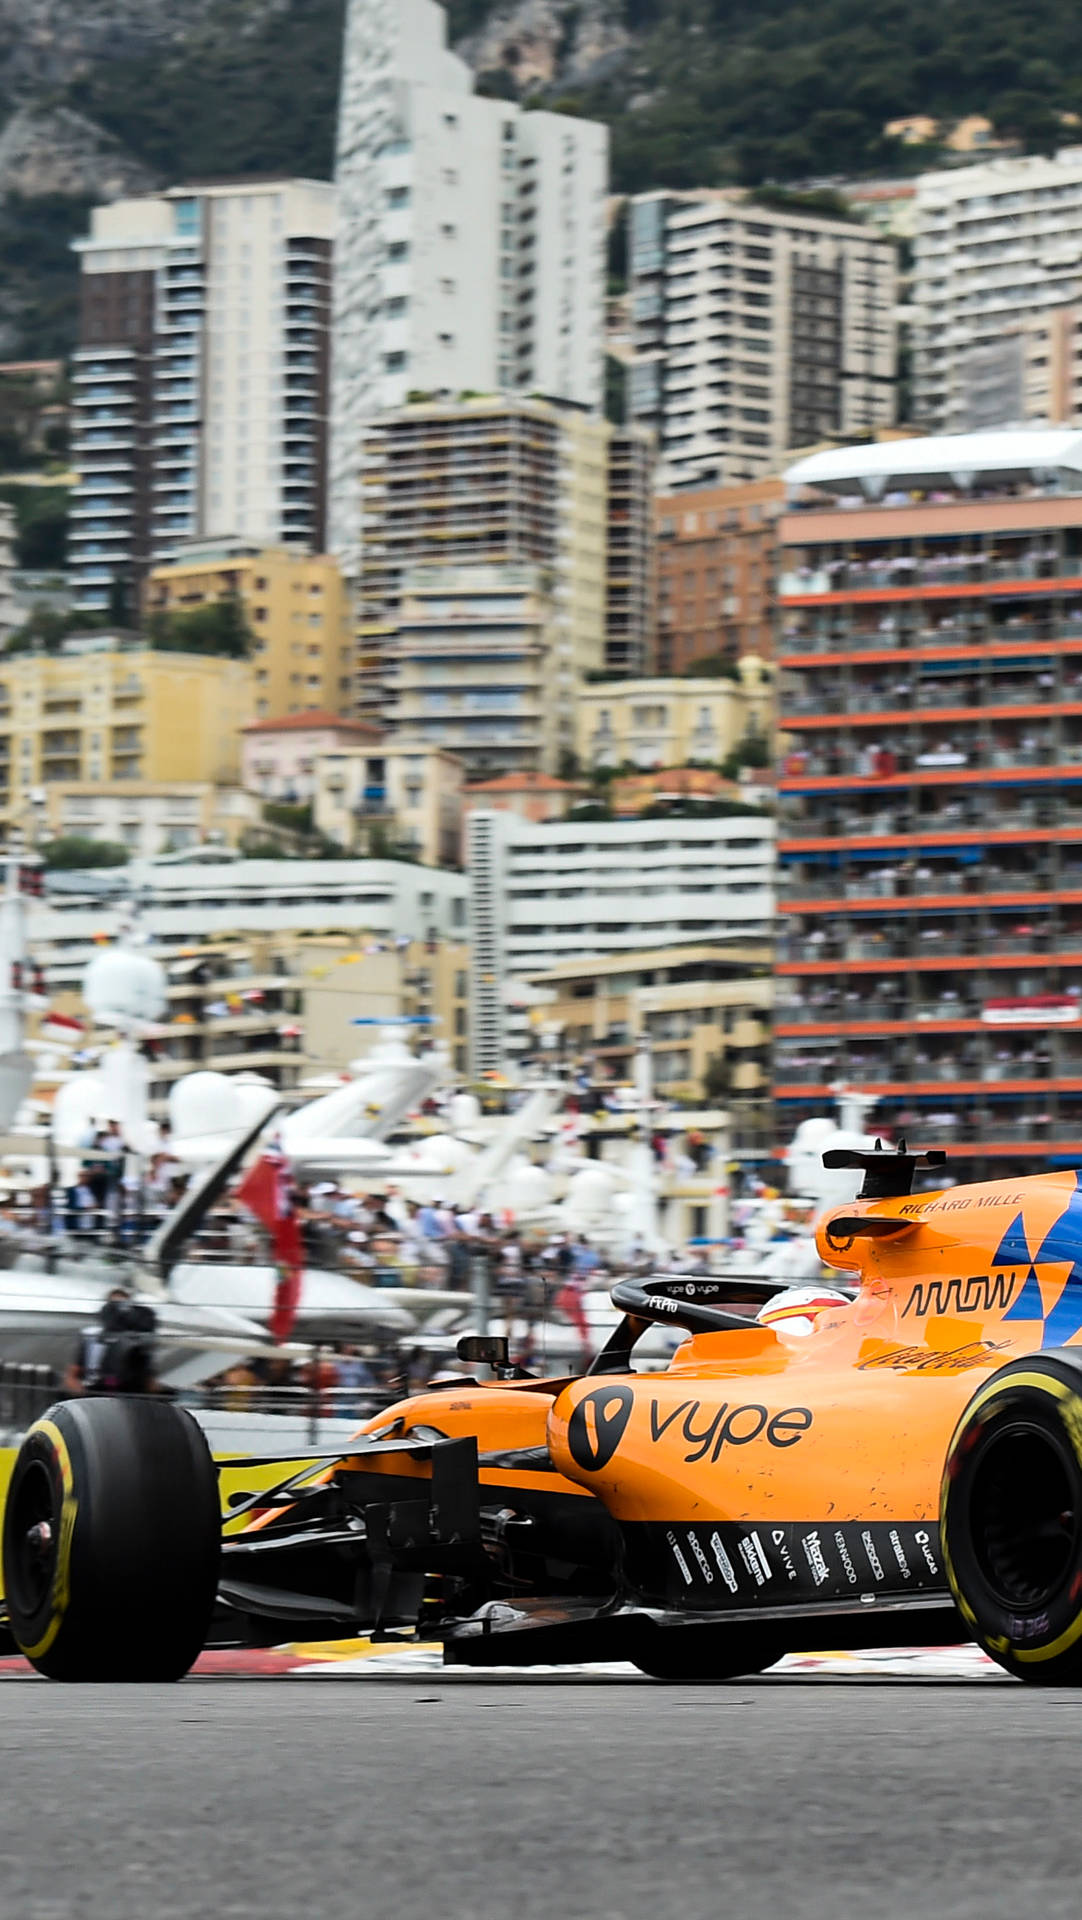 F1 Mclaren On Monaco Circuit Iphone Wallpaper